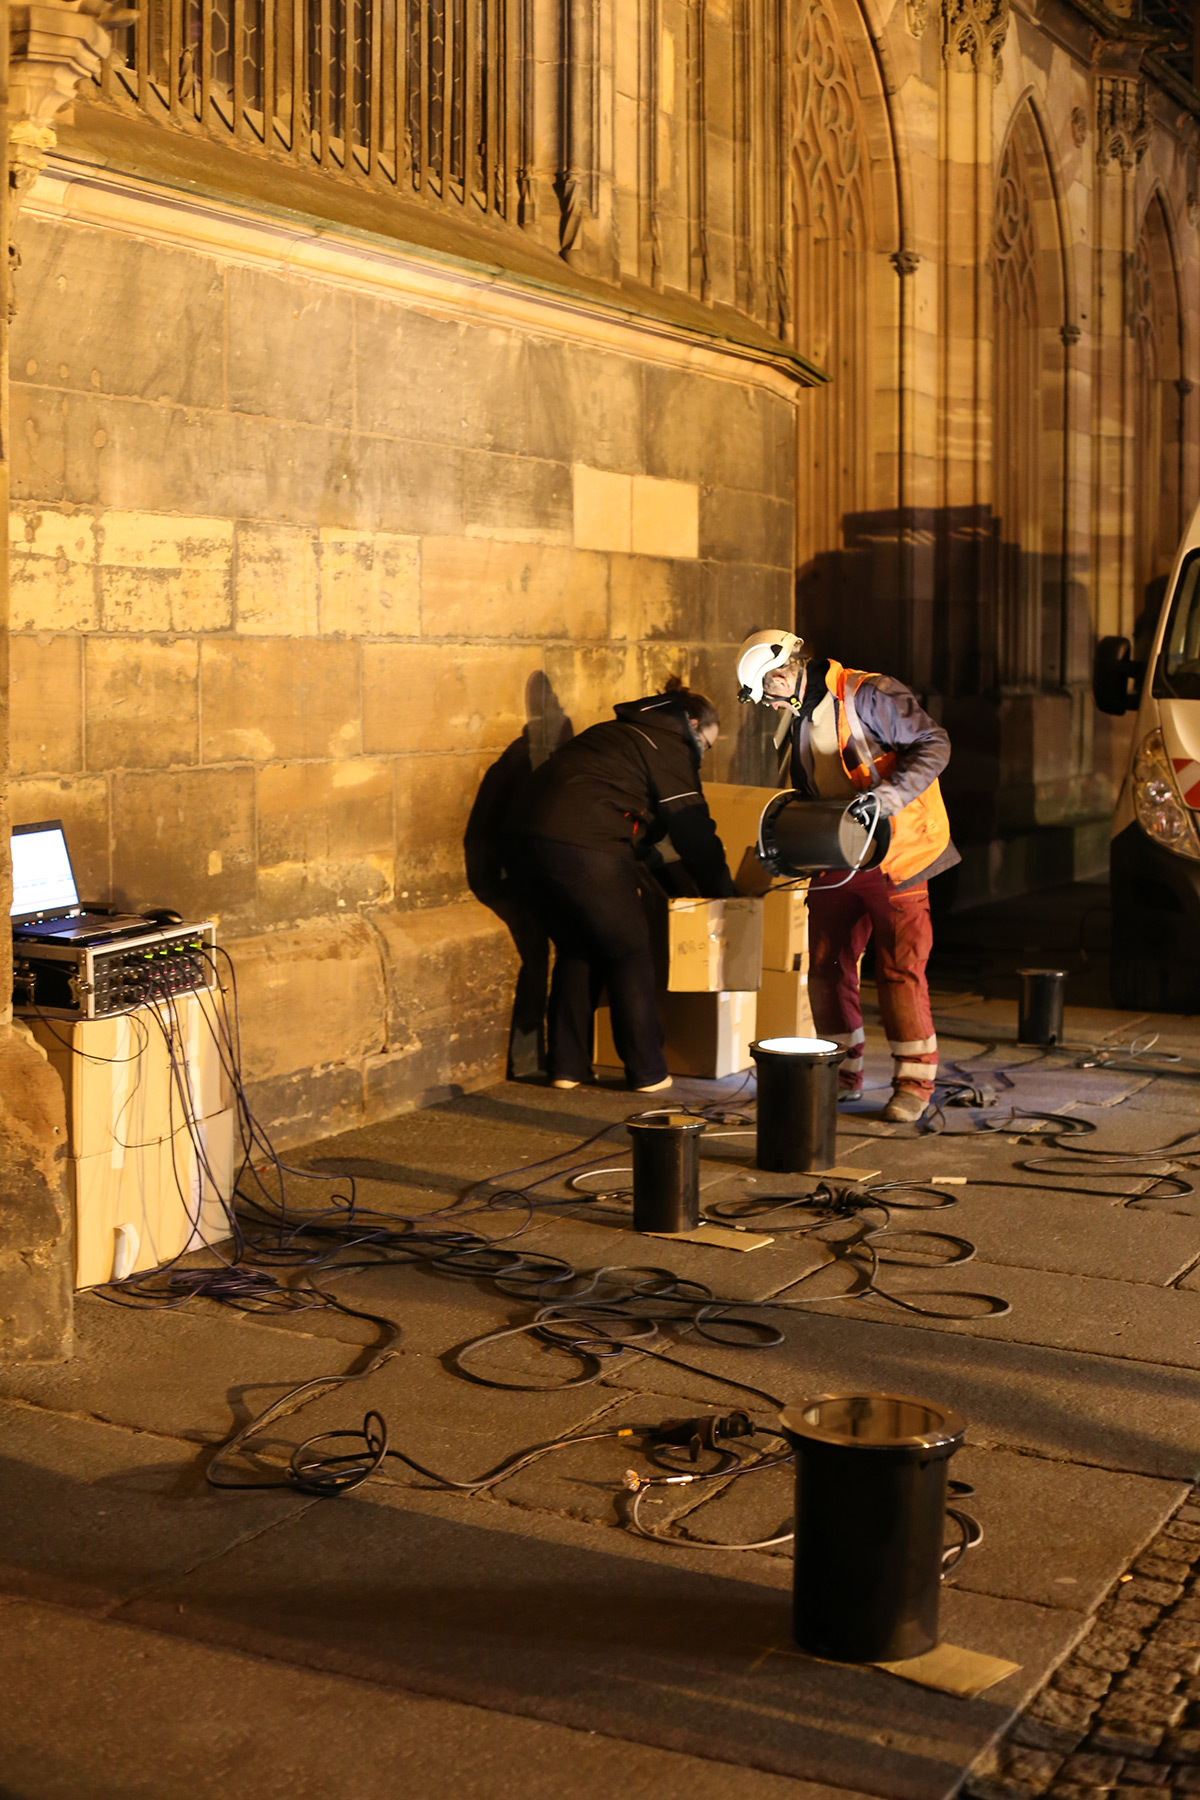 Equipe Citeos - Cathédrale de Strasbourg, France - test et essai d'éclairage avec L'Acte Lumière - 10 février 2016 - Photo : Vincent Laganier